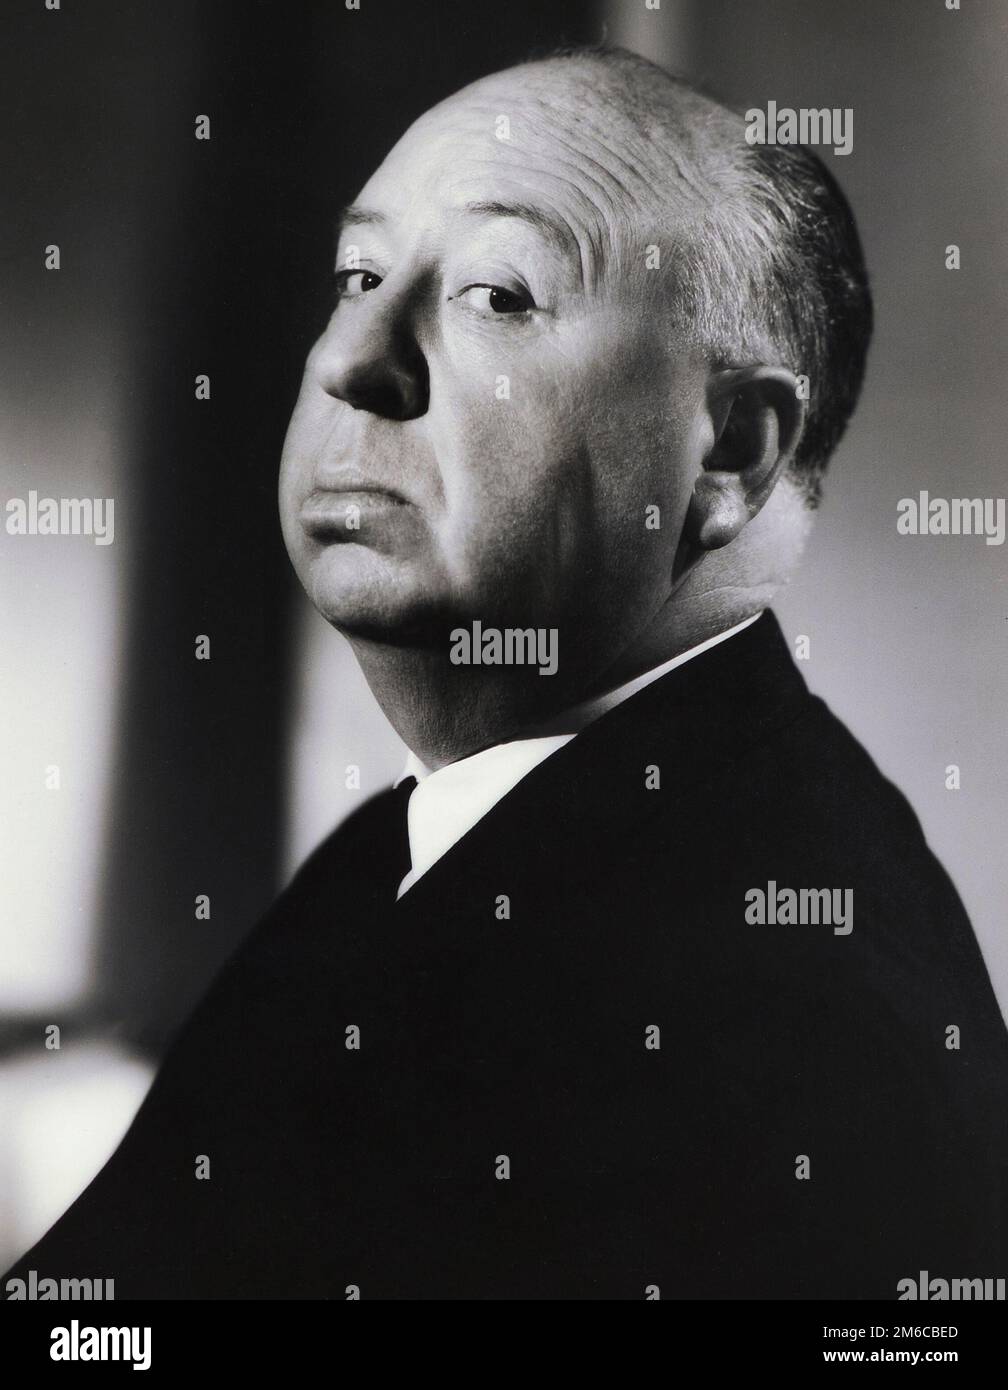 Le maître du suspense, Alfred Hitchcock, portrait, 1950s Banque D'Images